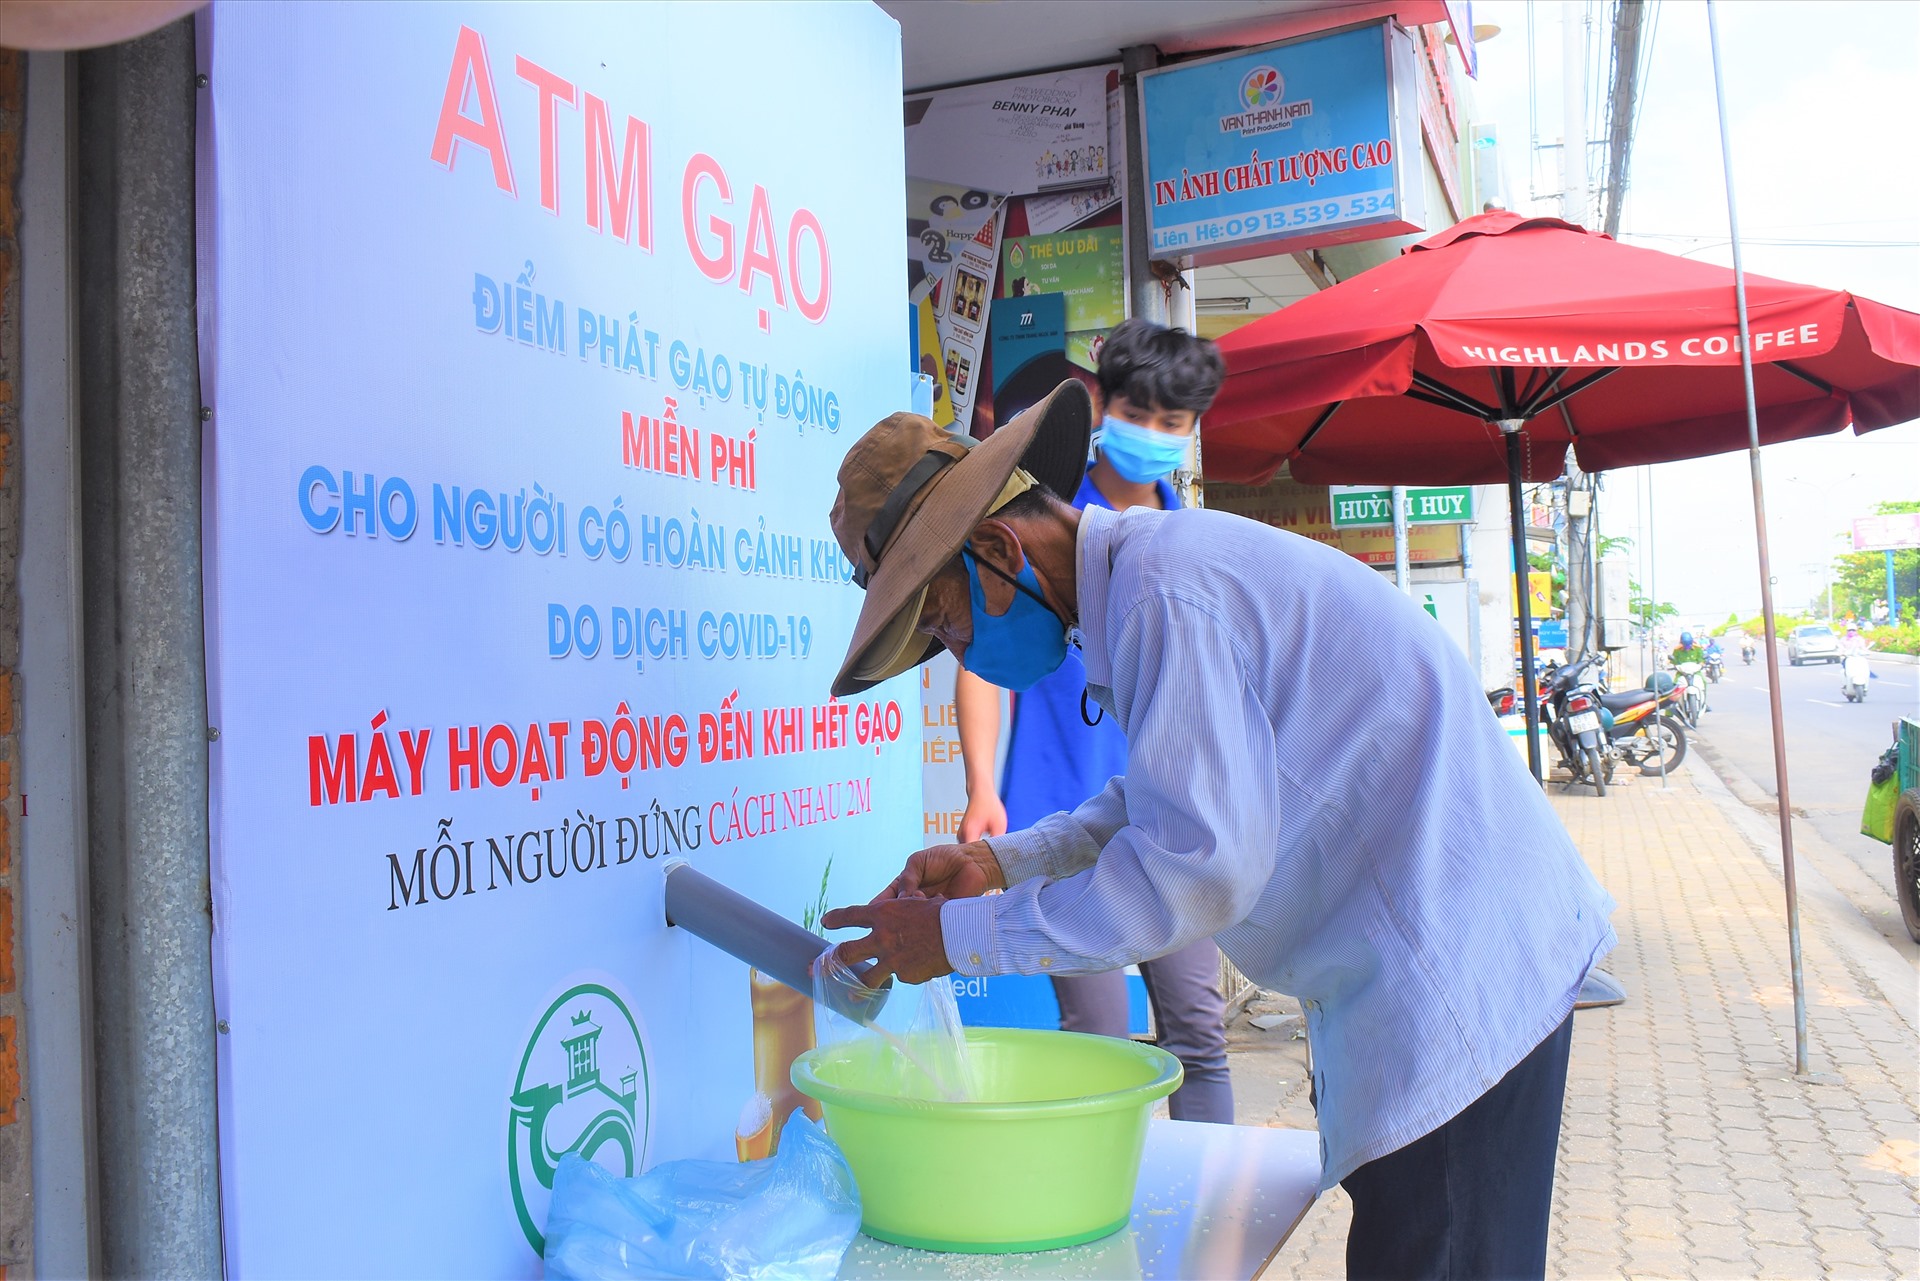 Cây ATM gạo ở thành phố Cần Thơ hoạt động đã “giải khát” giúp người lao động vượt qua khó khăn trong “cơn đại dịch COVID-19“. Ảnh: Thành Nhân